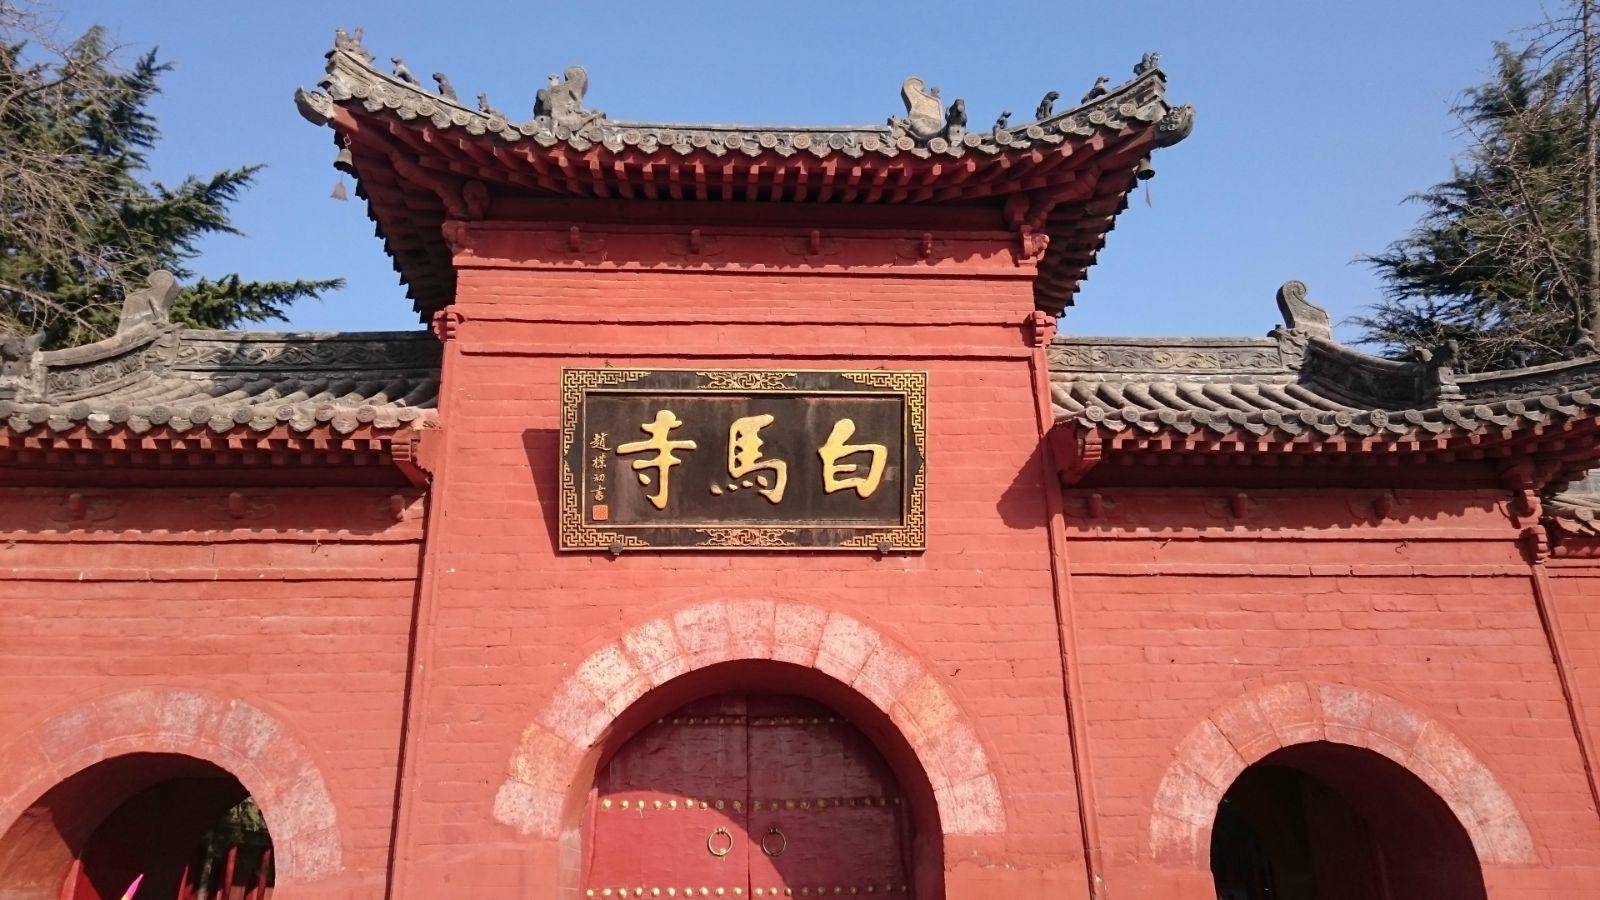 原创河南一座与少林寺齐名的寺庙,有中国第一古刹美誉